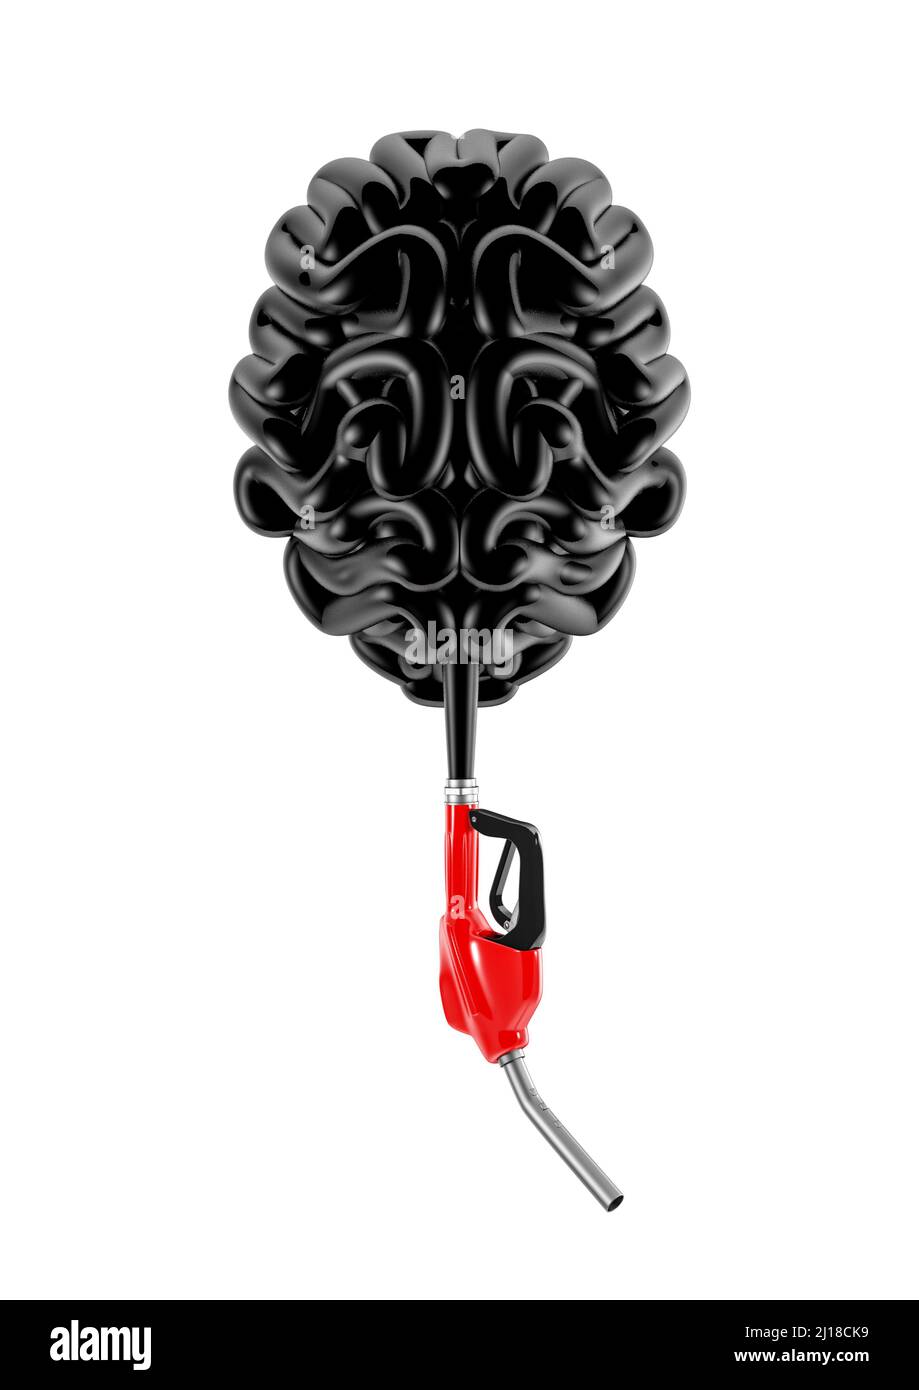 La crisi petrolifera ha sottolineato la mente - 3D illustrazione del tubo di benzina che forma il cervello umano isolato su sfondo bianco Foto Stock